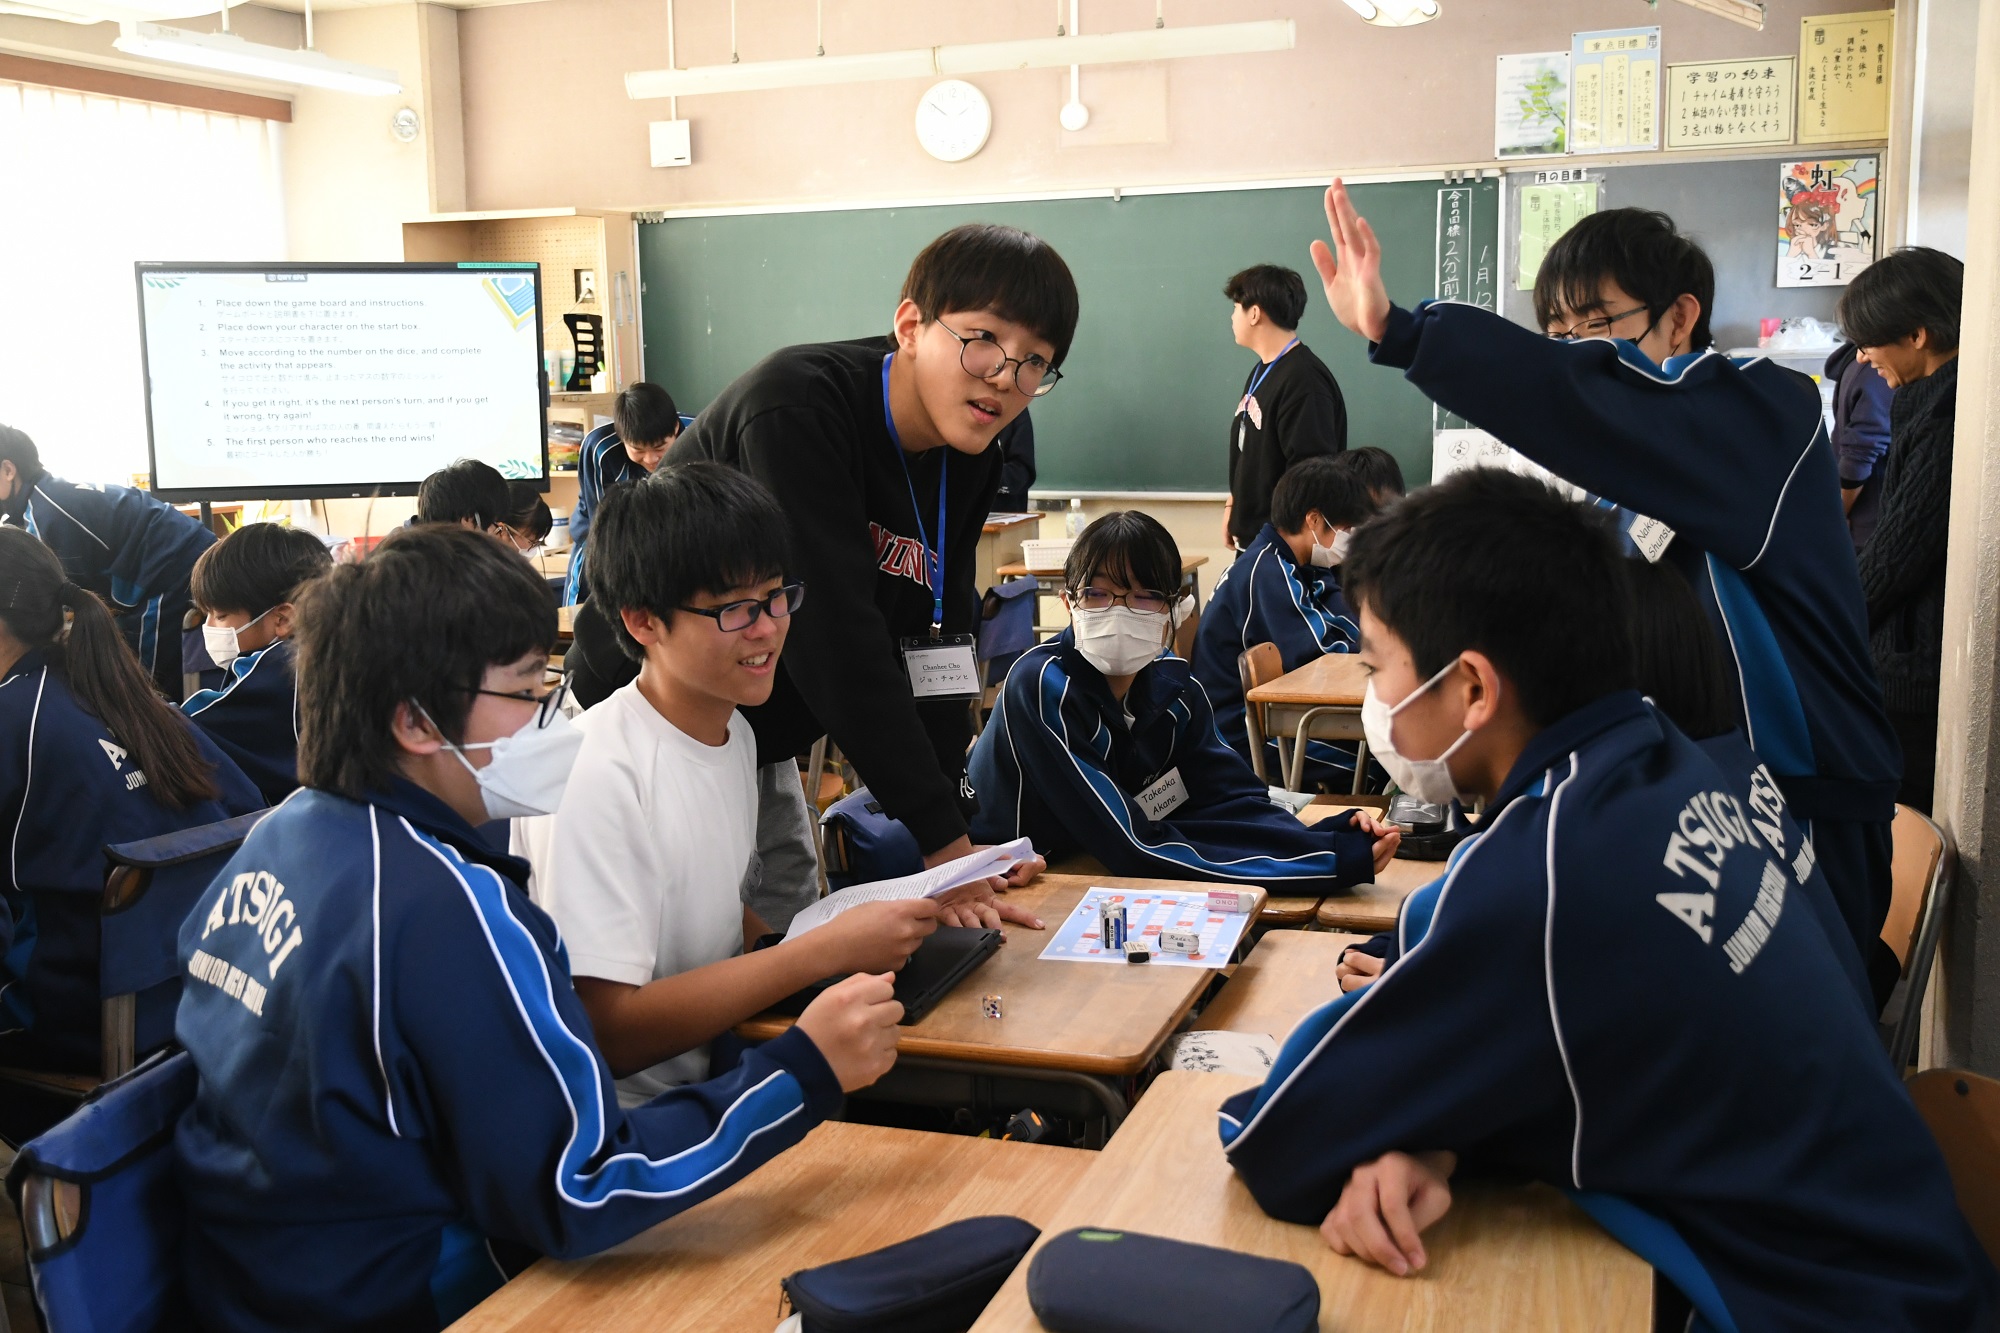 厚木中学校で韓国の高校生が中学2年生の生徒と触れ合っている様子の写真